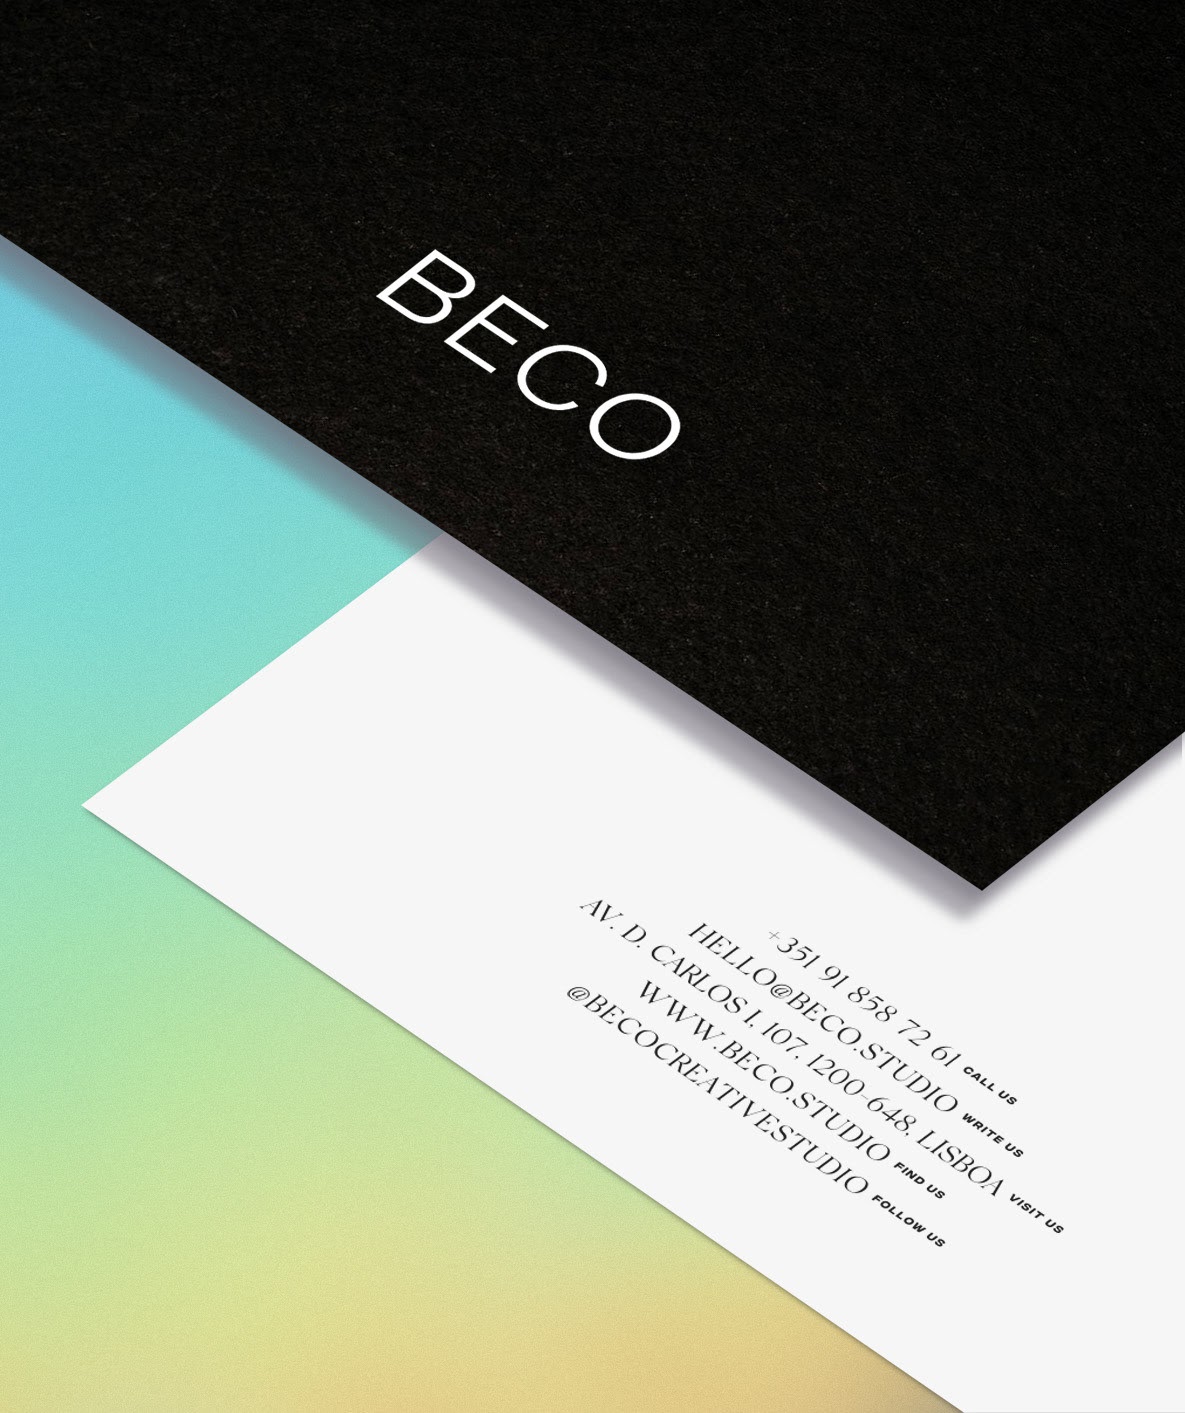 Beco Creative Studio设计工作室品牌和视觉识别设计